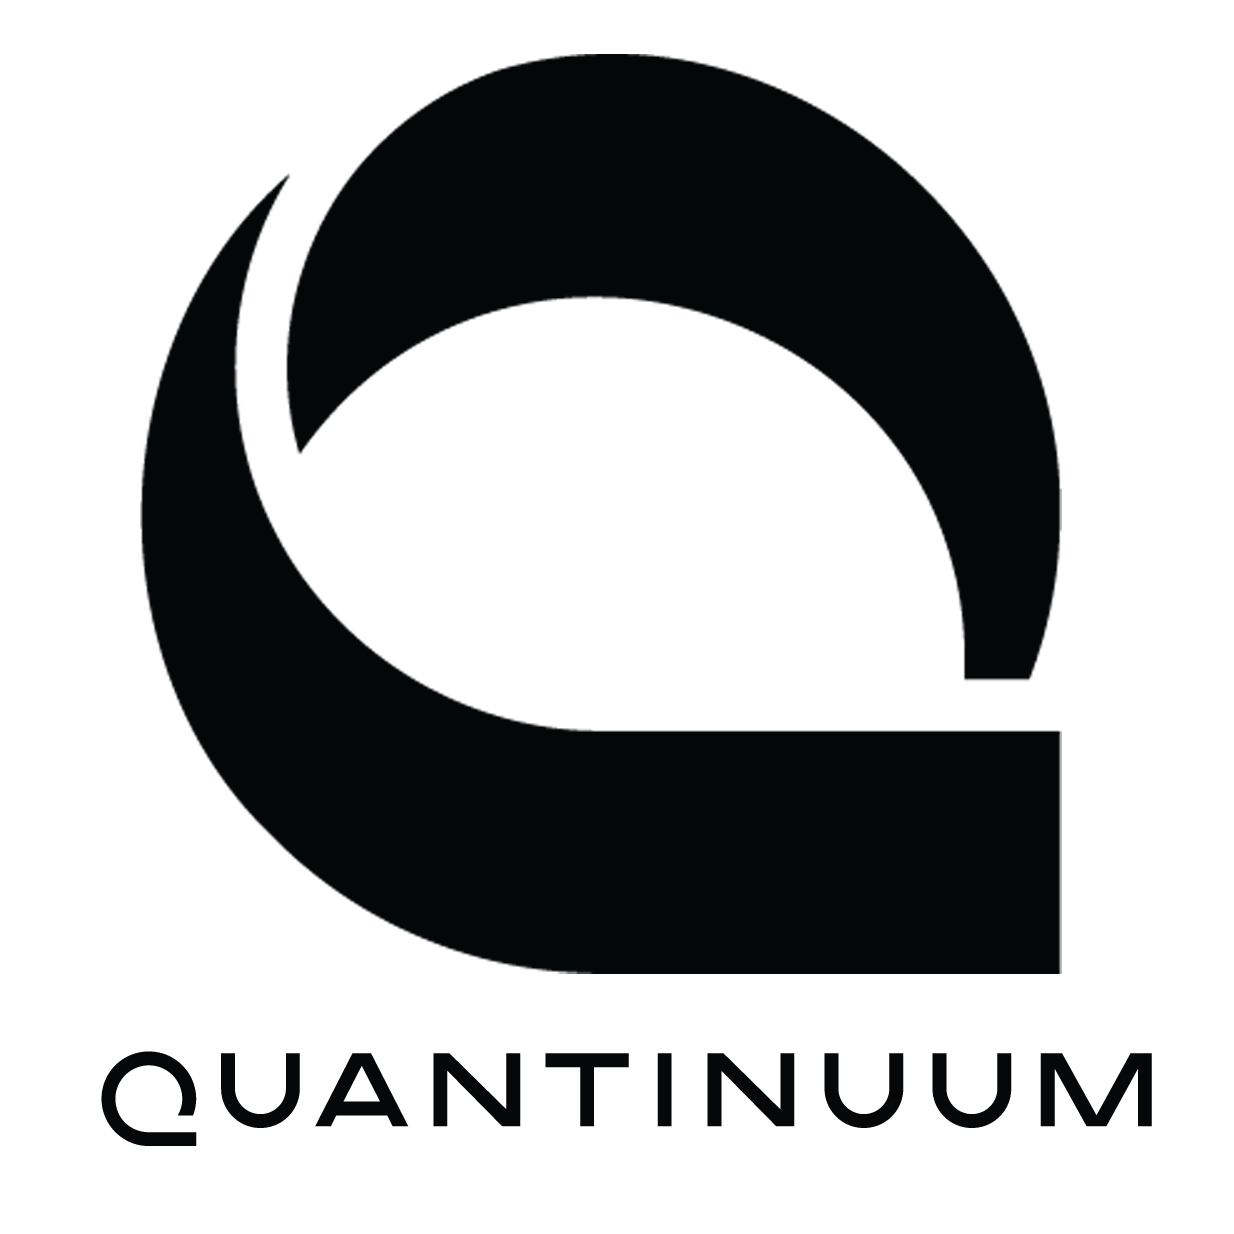 _images/Quantinuum_logo.png